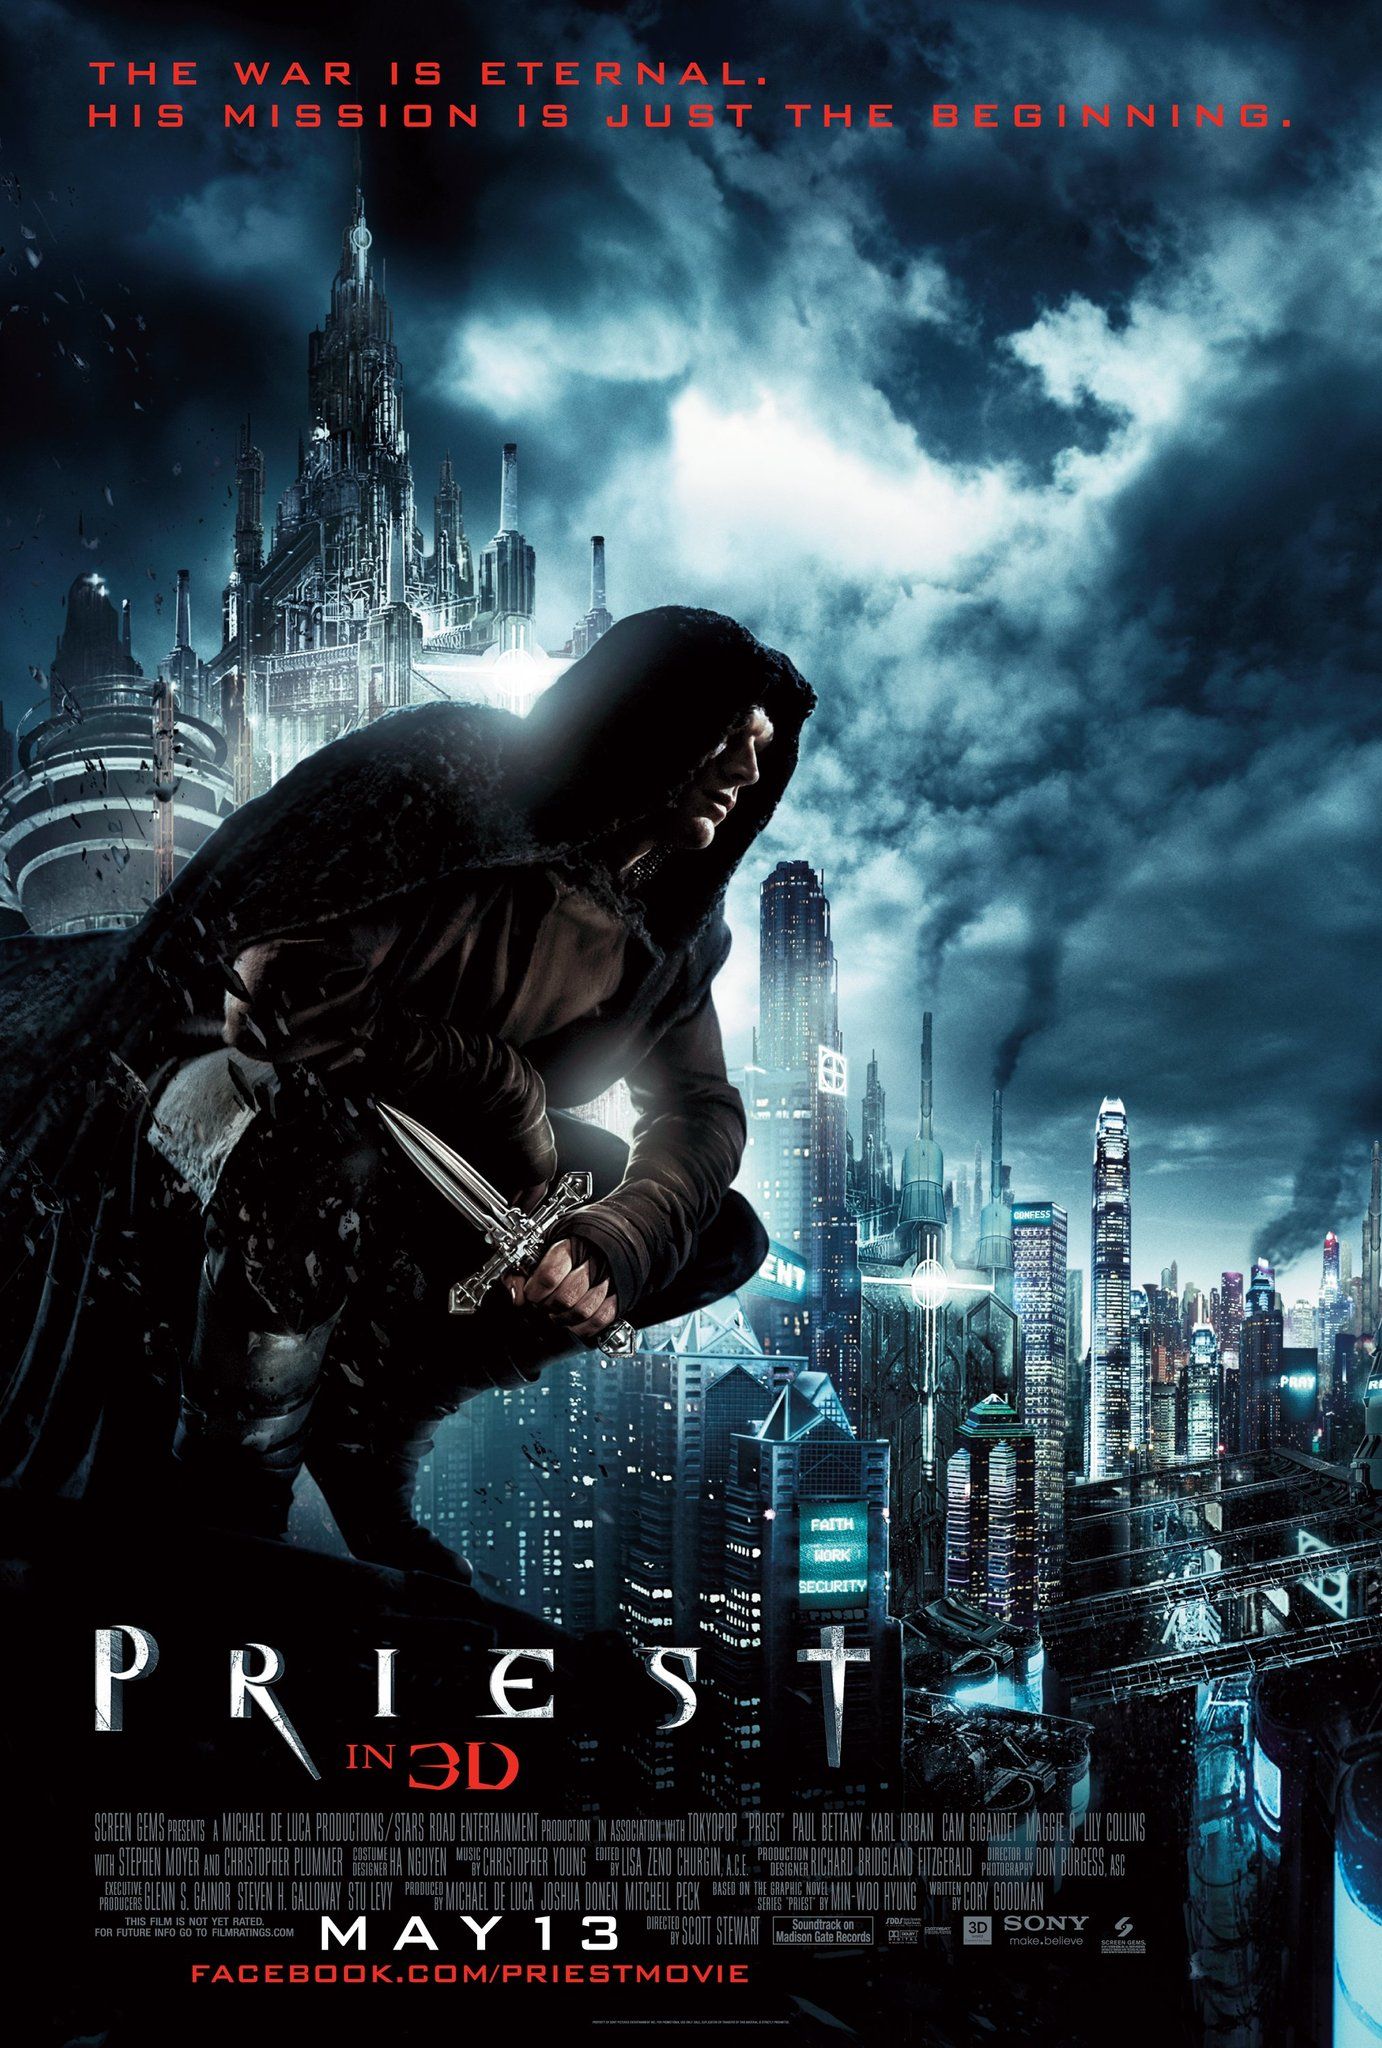 Priest (2011) Hindi Dubbed Full Movie